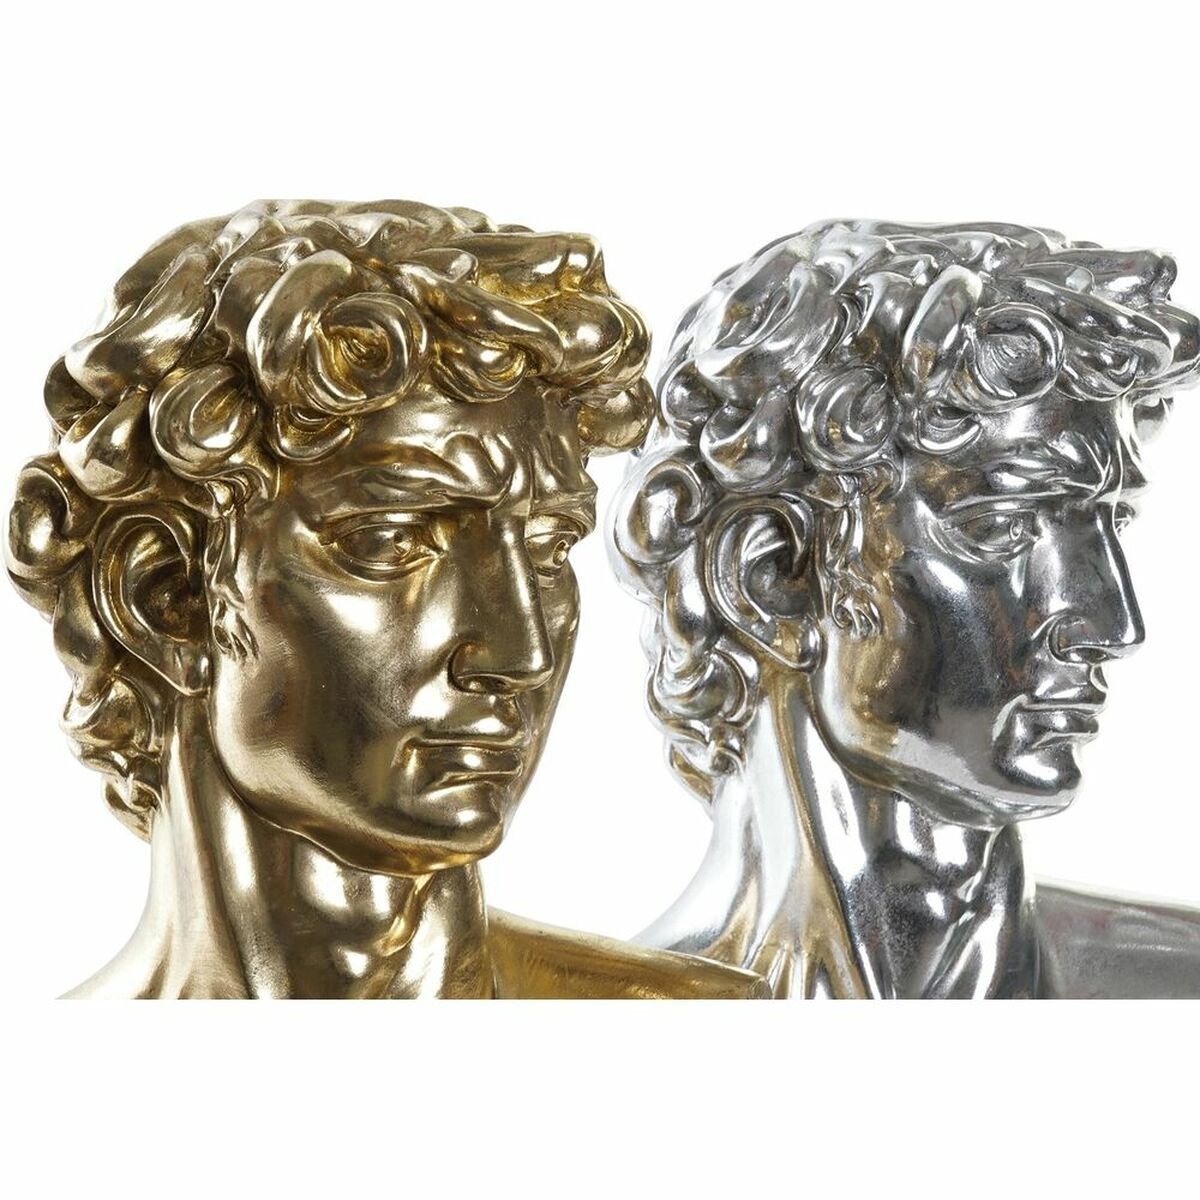 David ασήμι και χρυσό 24,5 x 17,5 x 36 cm